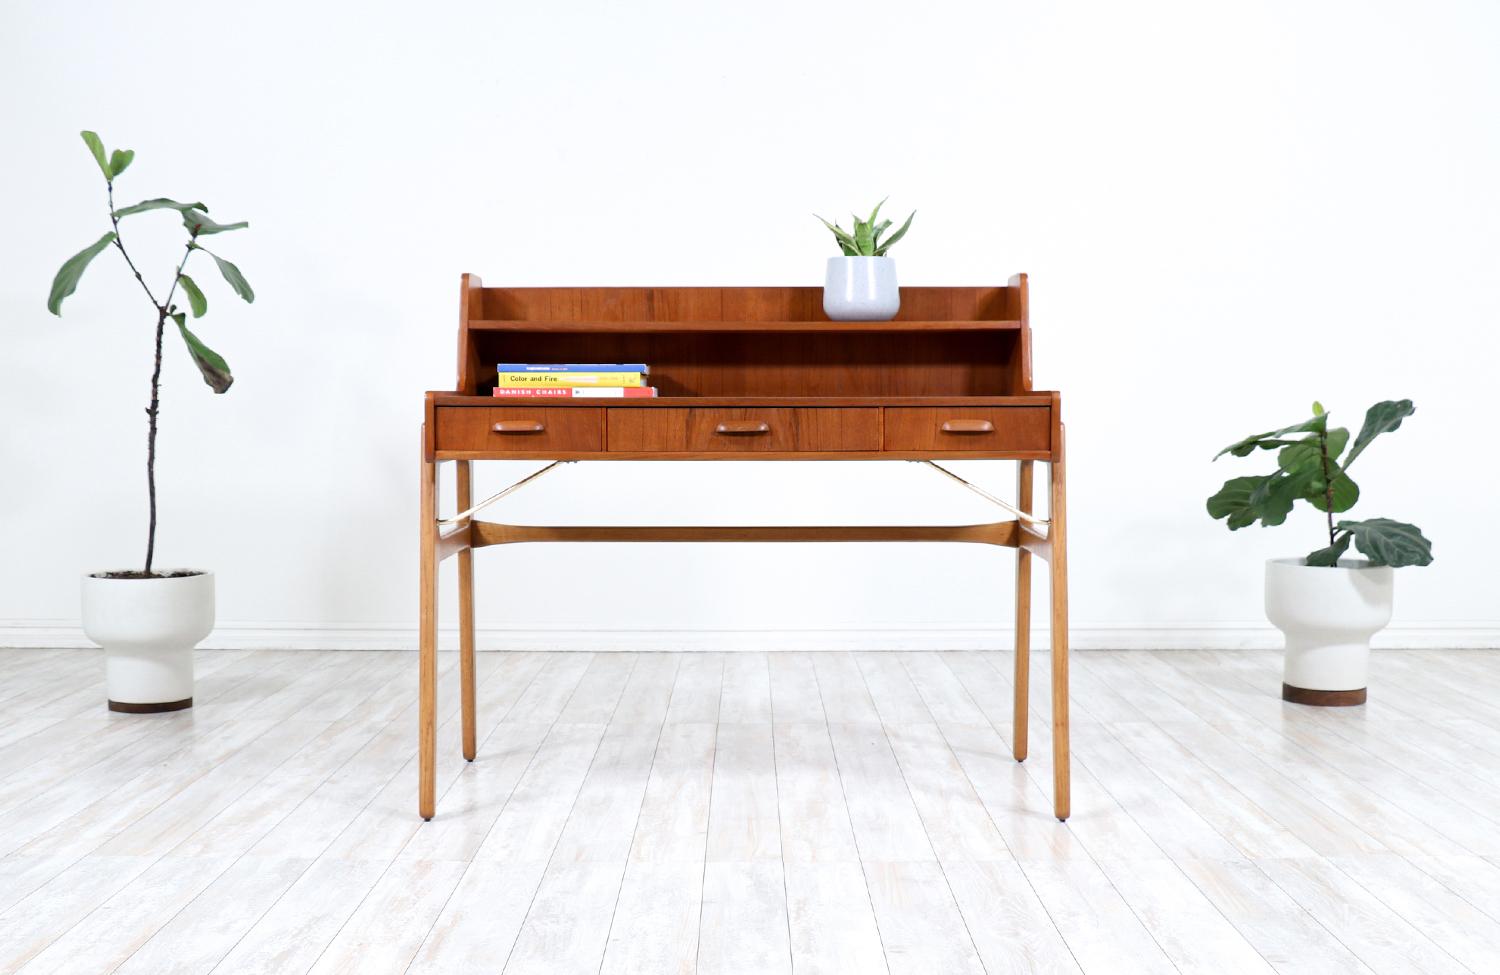 Danish Johannes Andersen Teak & Oak Two-Tier Desk with Brass Accents for Møbelfabrik F. For Sale